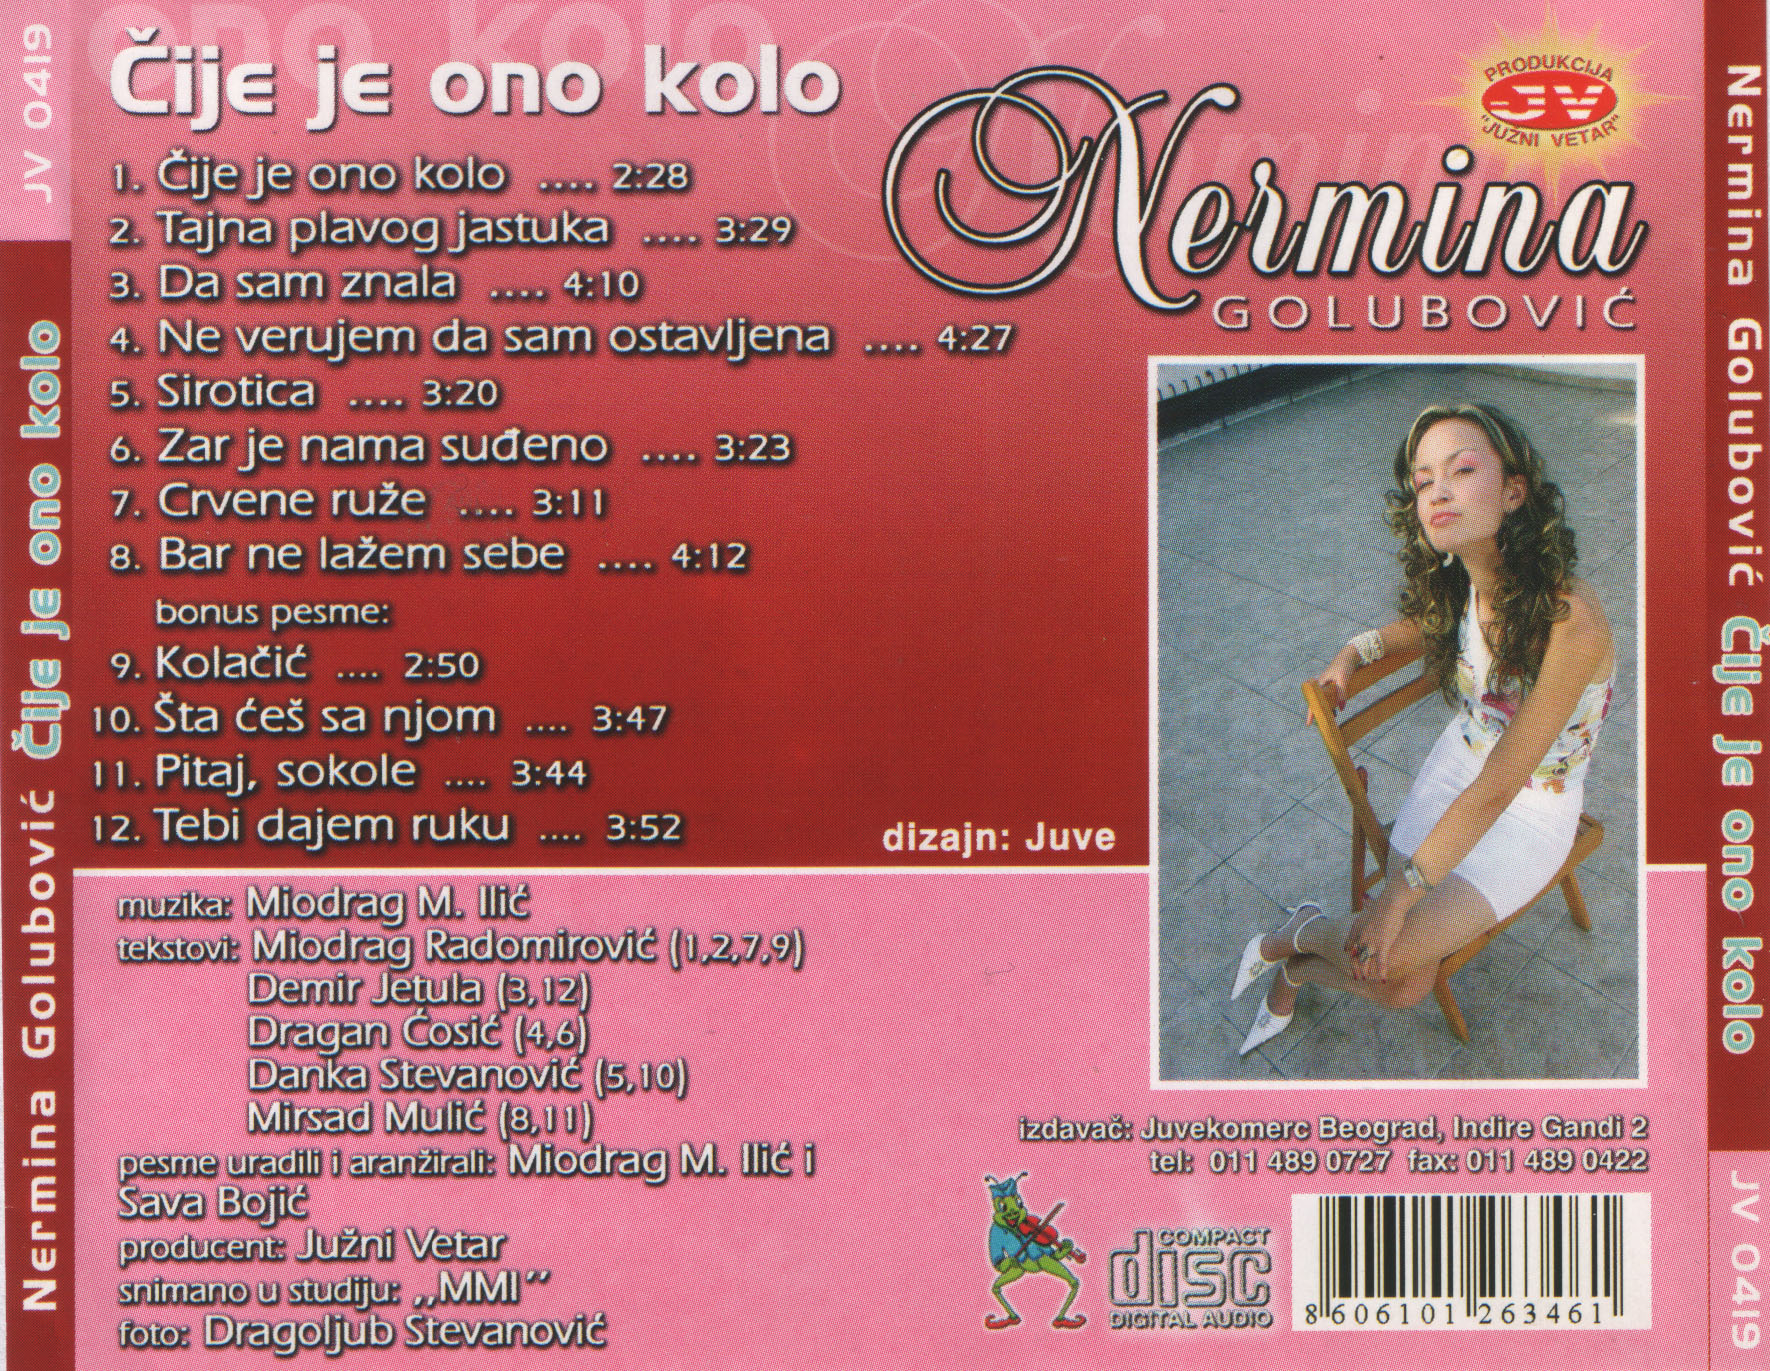 Nermina Golubovic 2004 Zadnja